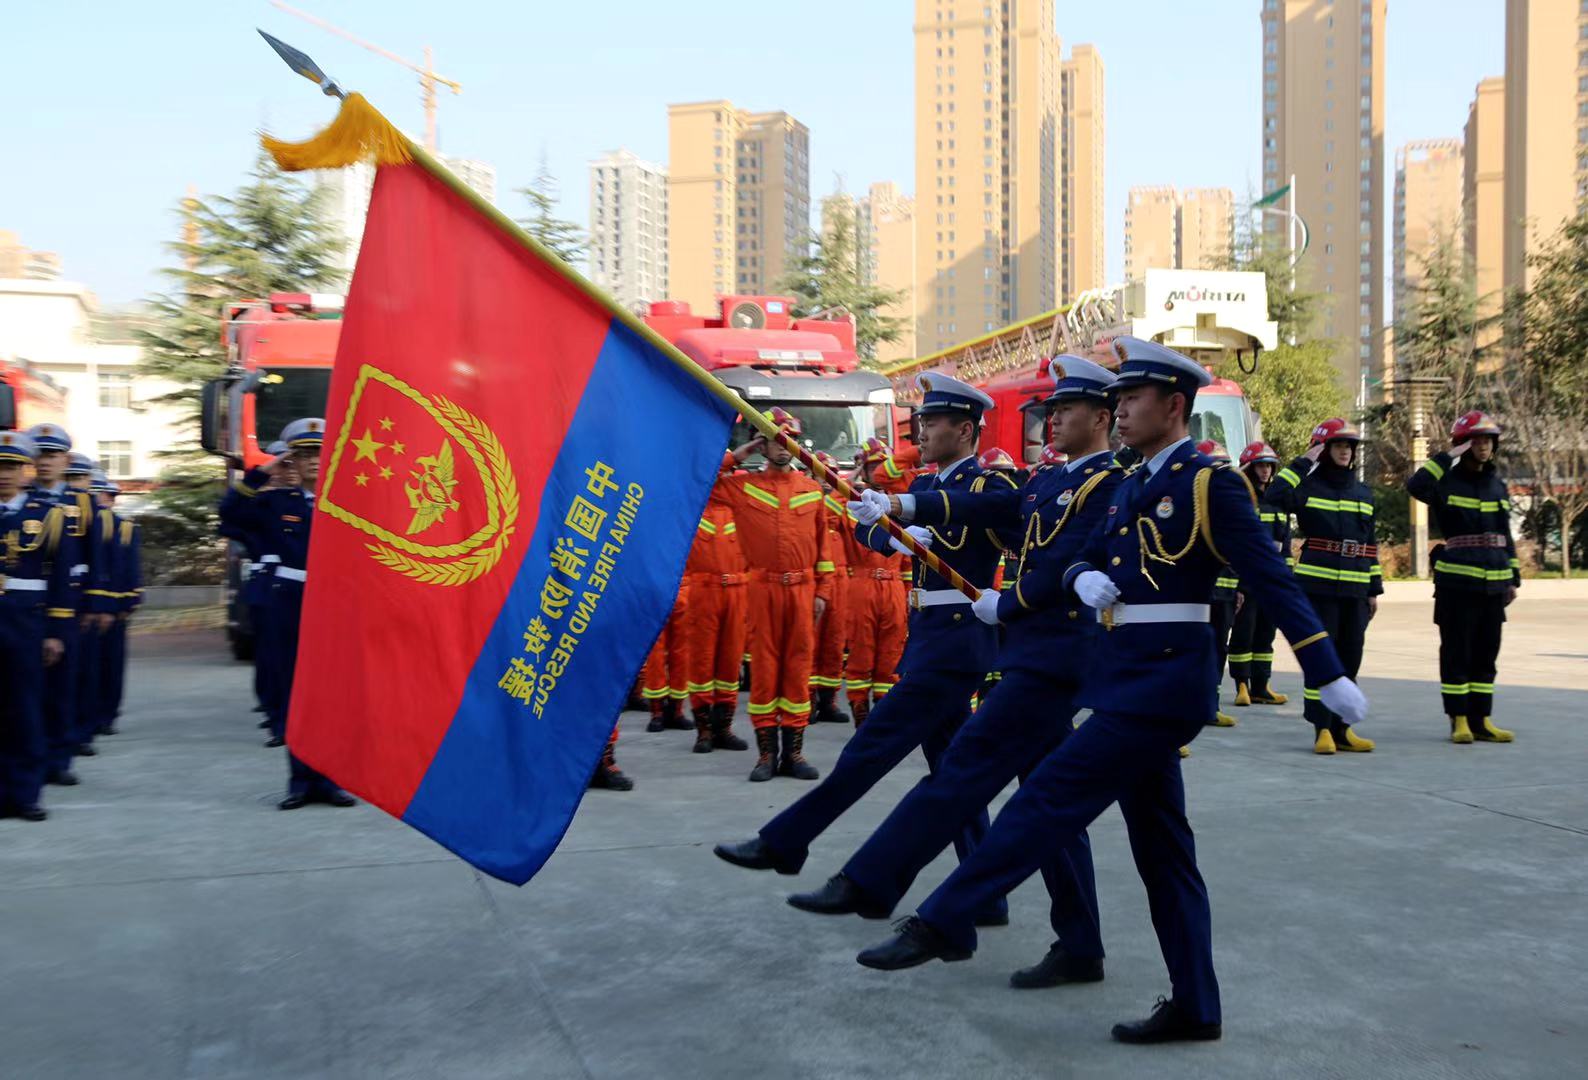 中国消防壁纸 队旗图片